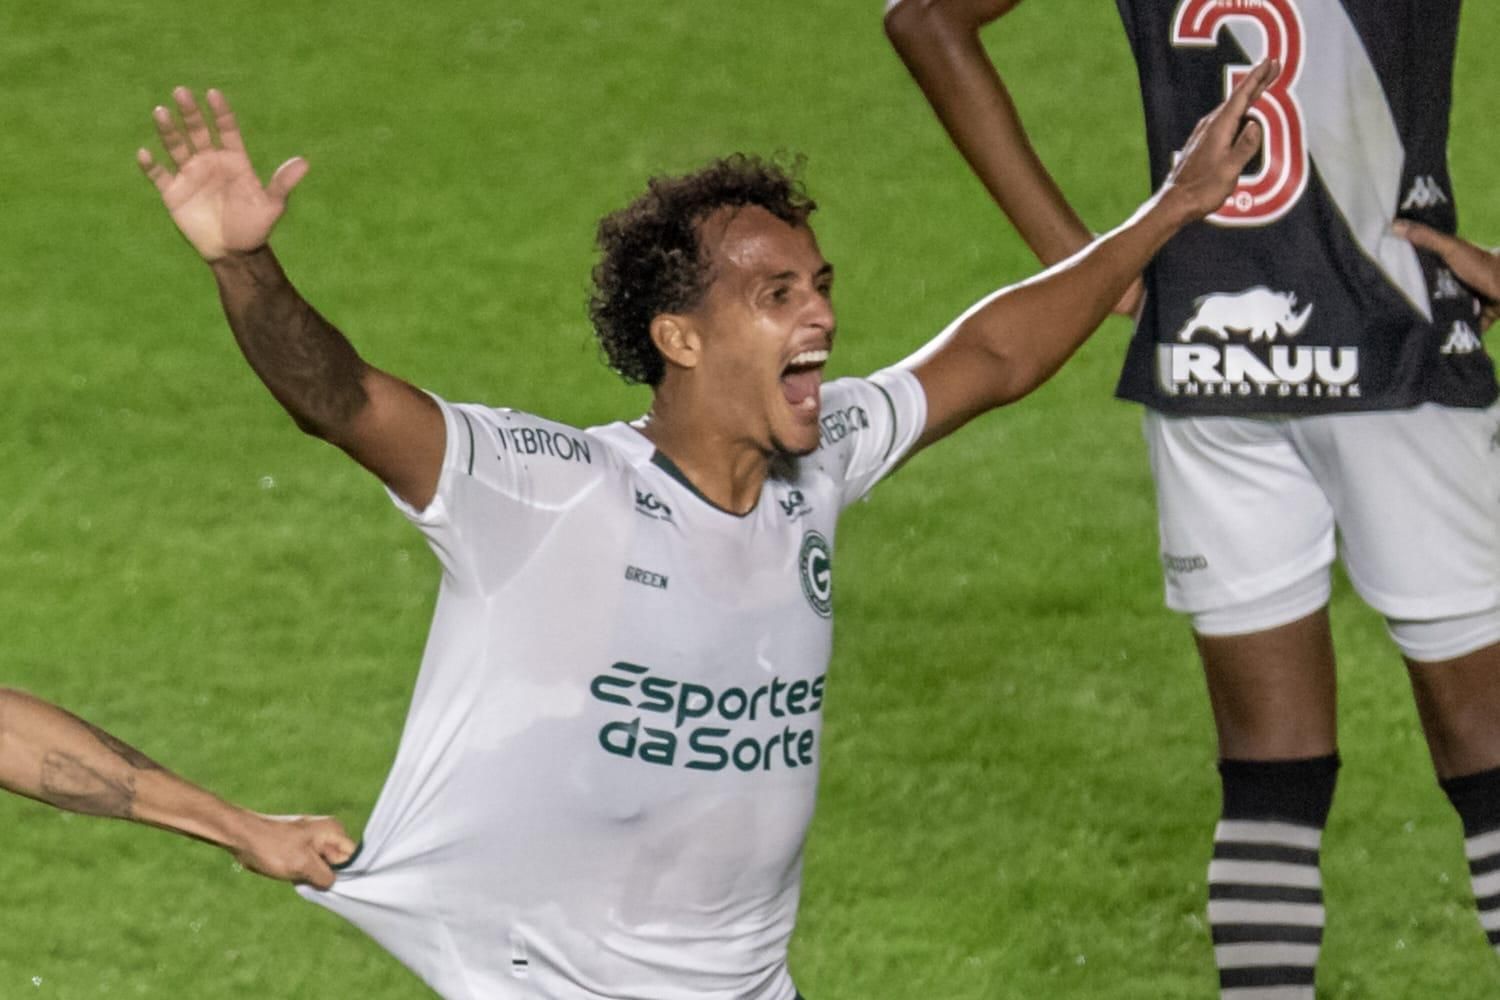 Reforço nobre: São Paulo terá artilheiro de 27 gols em 2023 em seu elenco